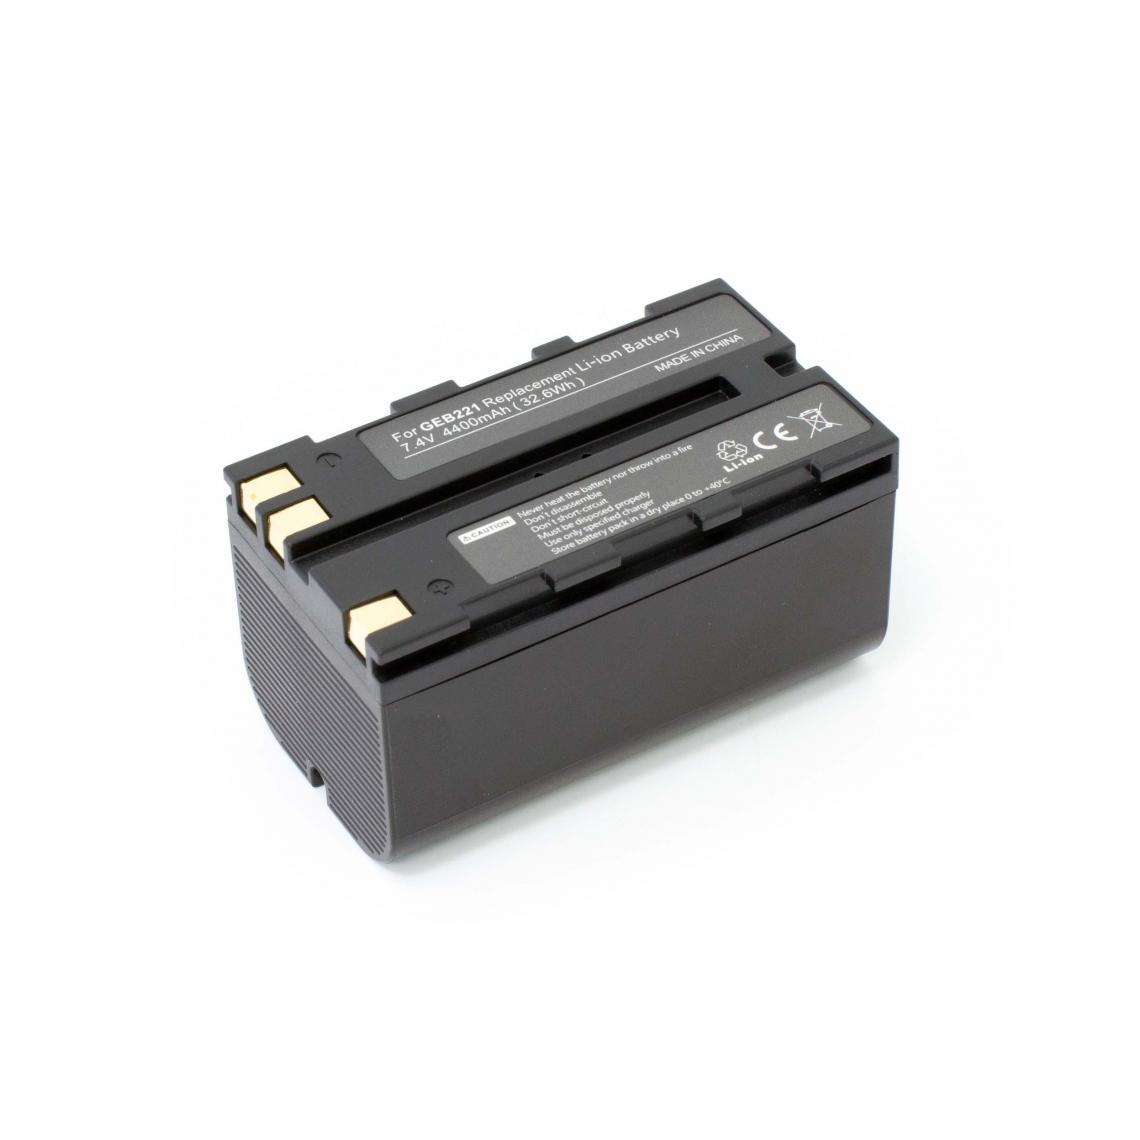 Vhbw - vhbw Batterie compatible avec Leica TCR805 Power, TPS1000 dispositif de mesure laser, outil de mesure (4400mAh, 7,4V, Li-ion) - Piles rechargeables